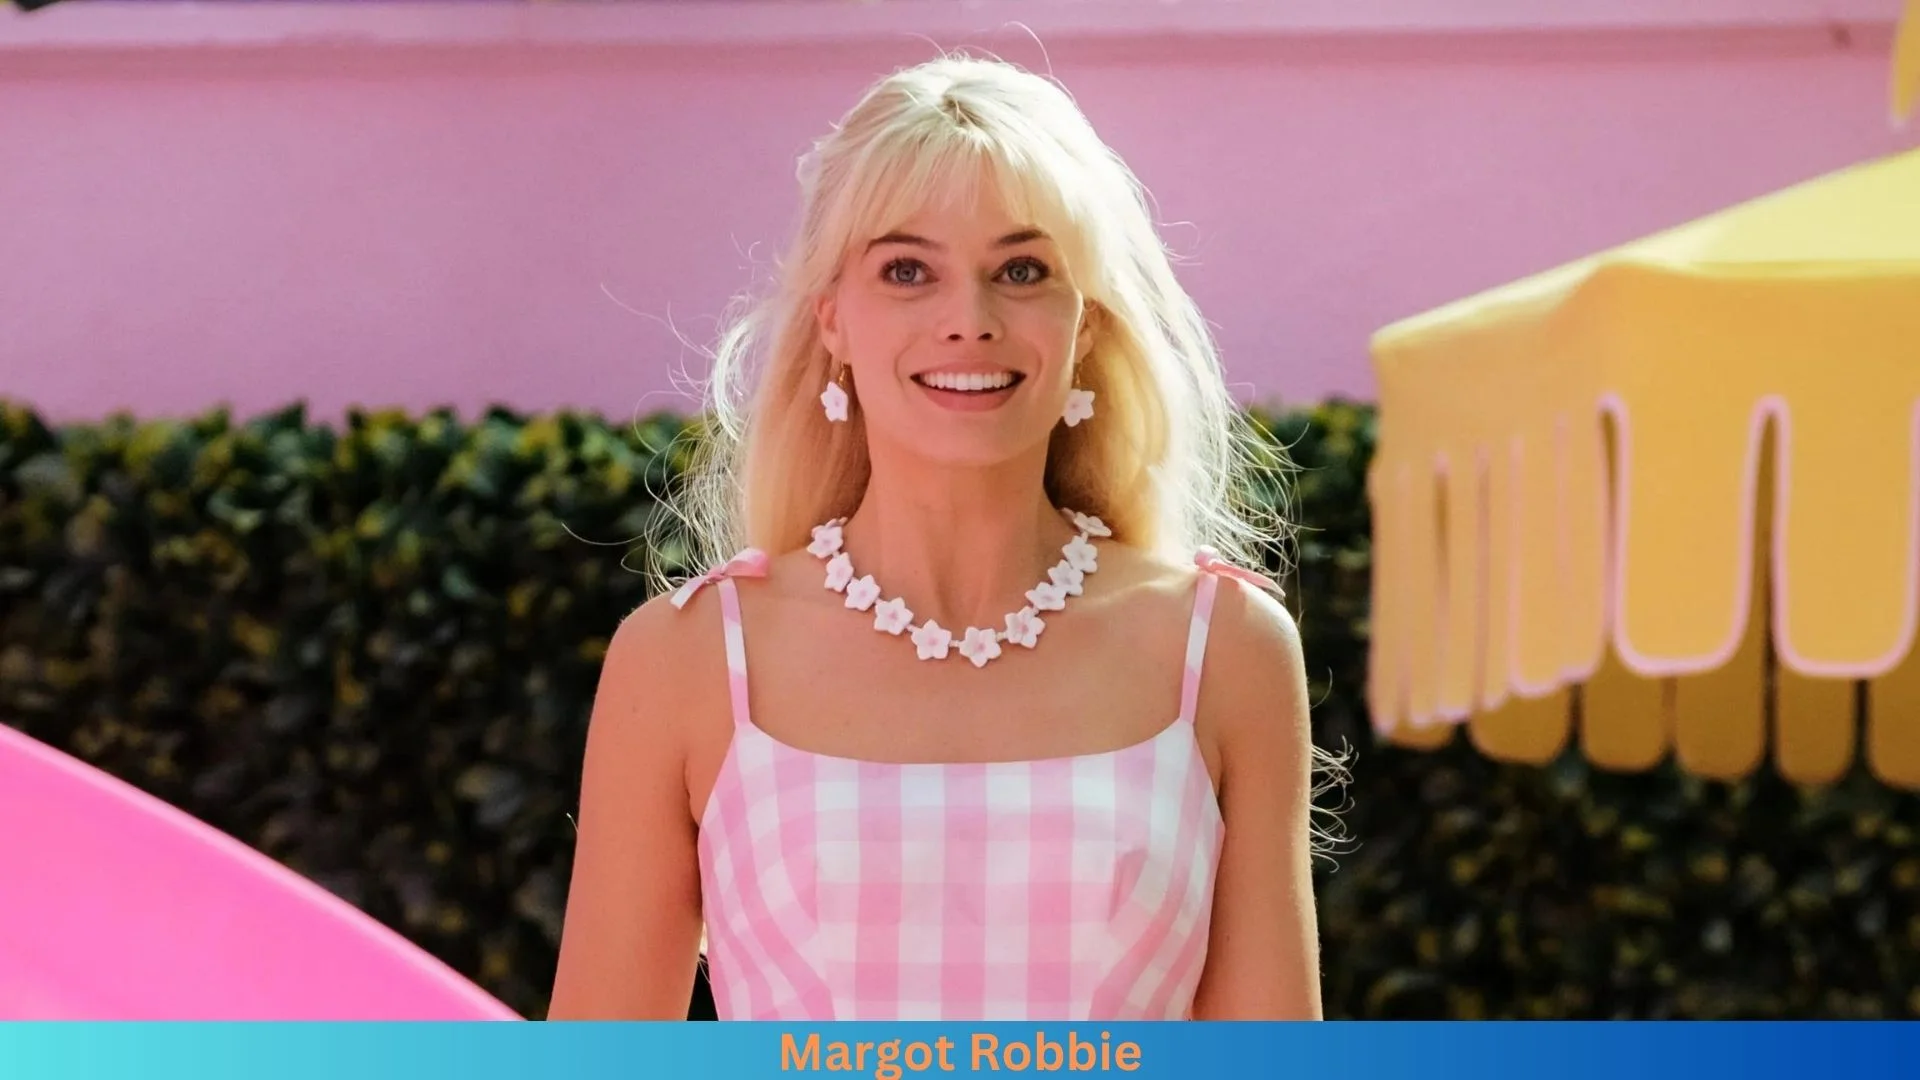 Net Worth of Margot Robbie